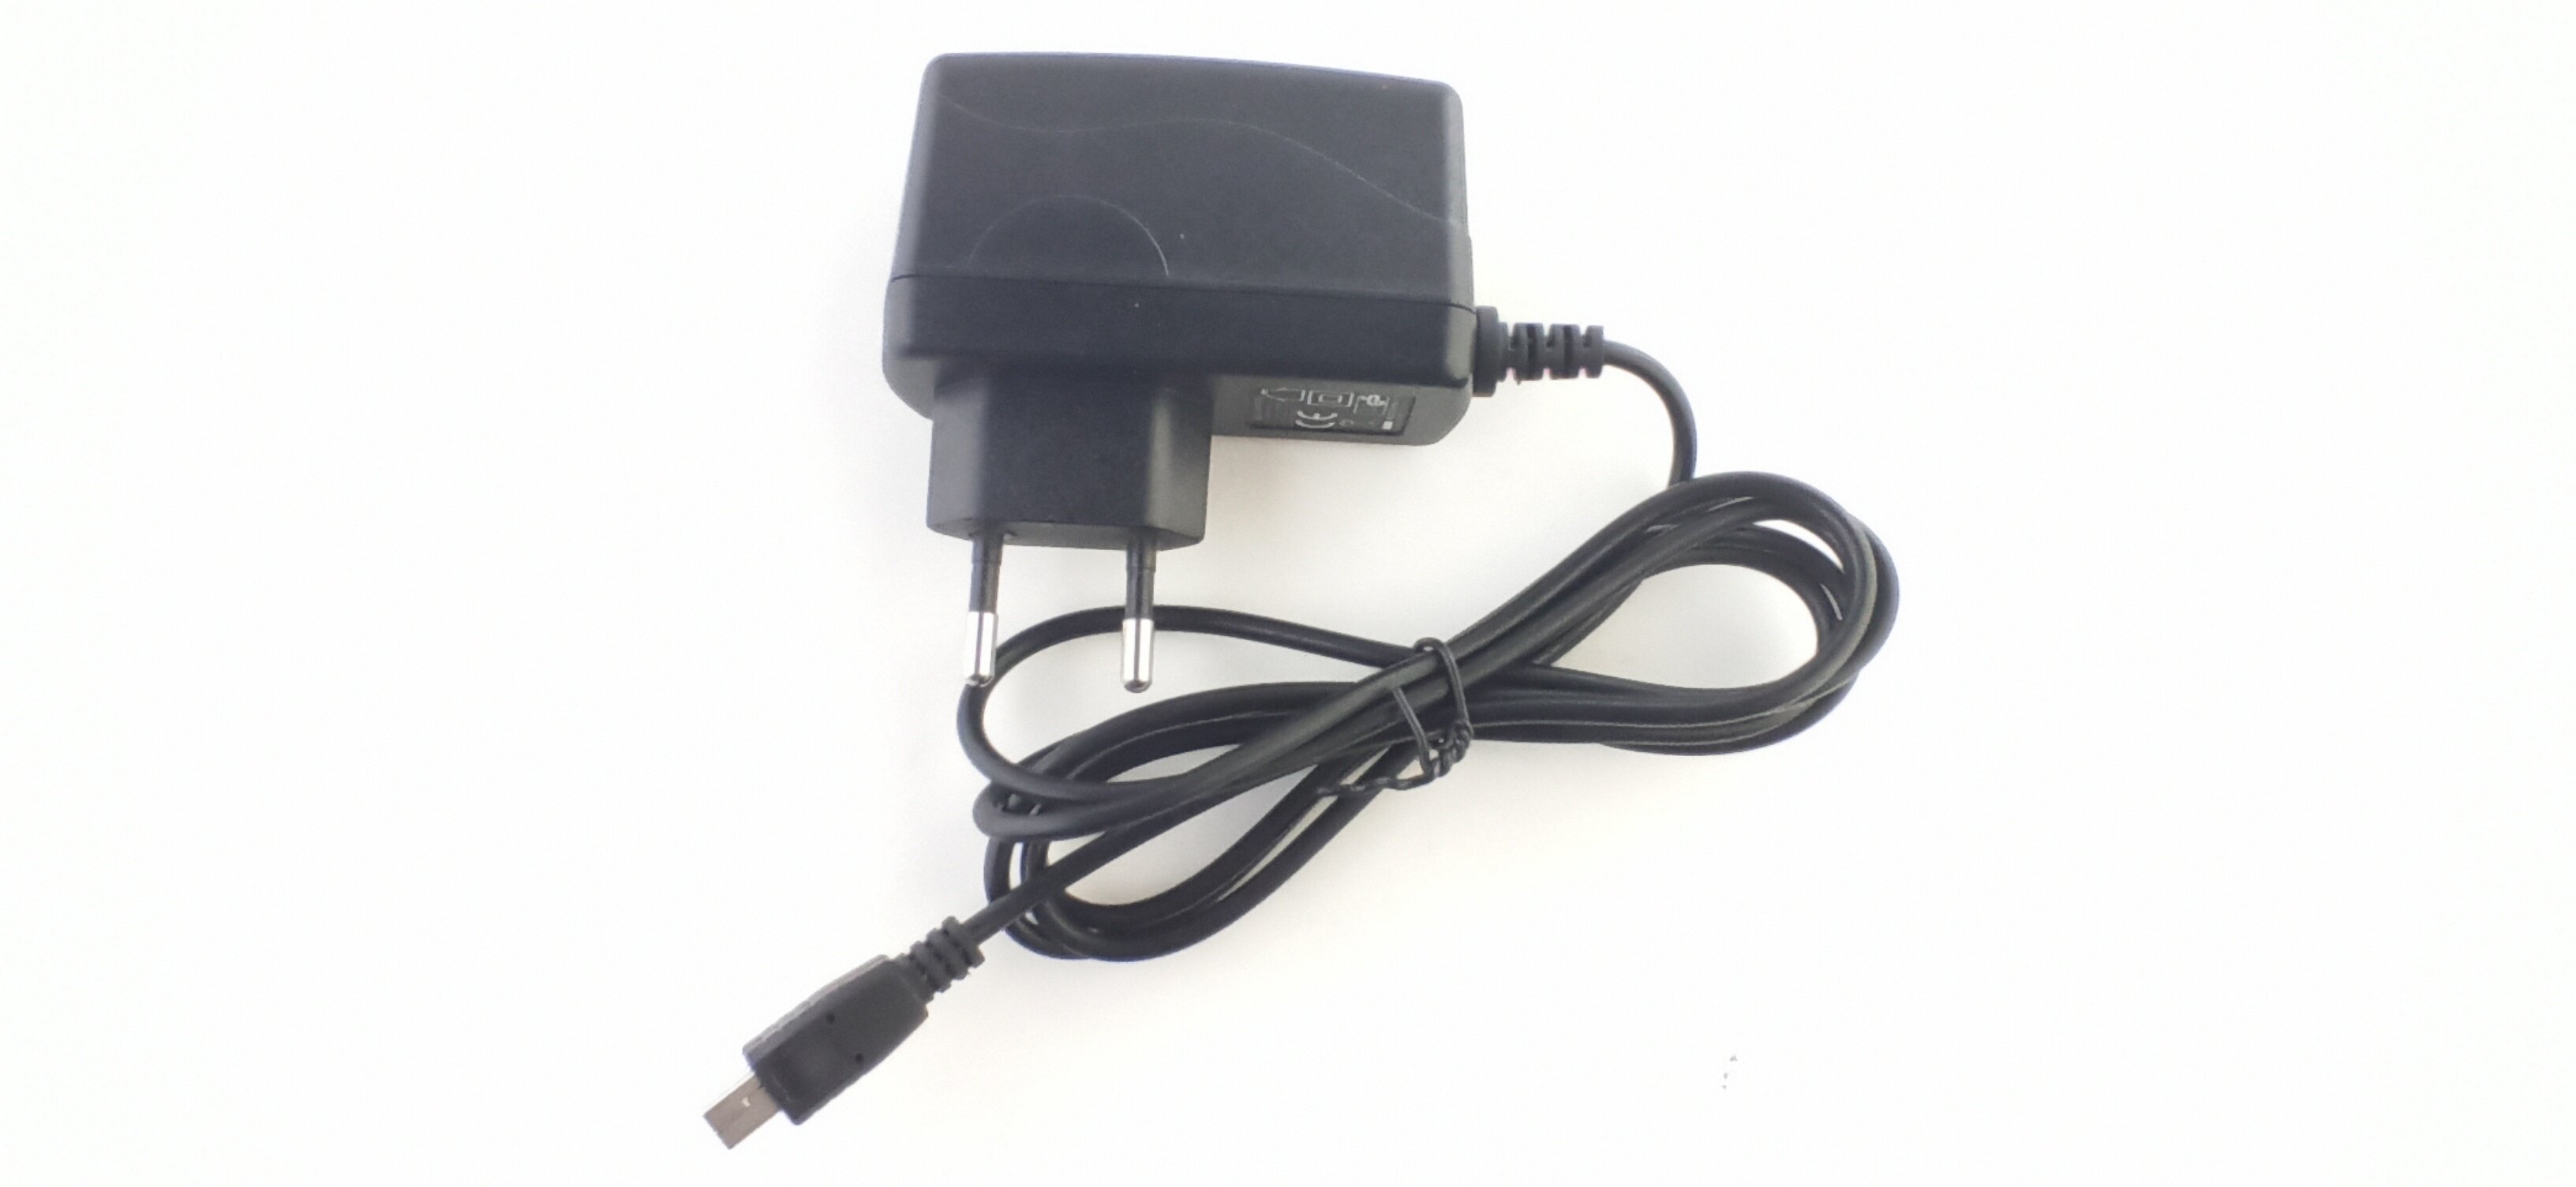 Блок питания 5V/2A шнур mini-USB (двусторонний многоконтактный коннектор подобный Mini USB)